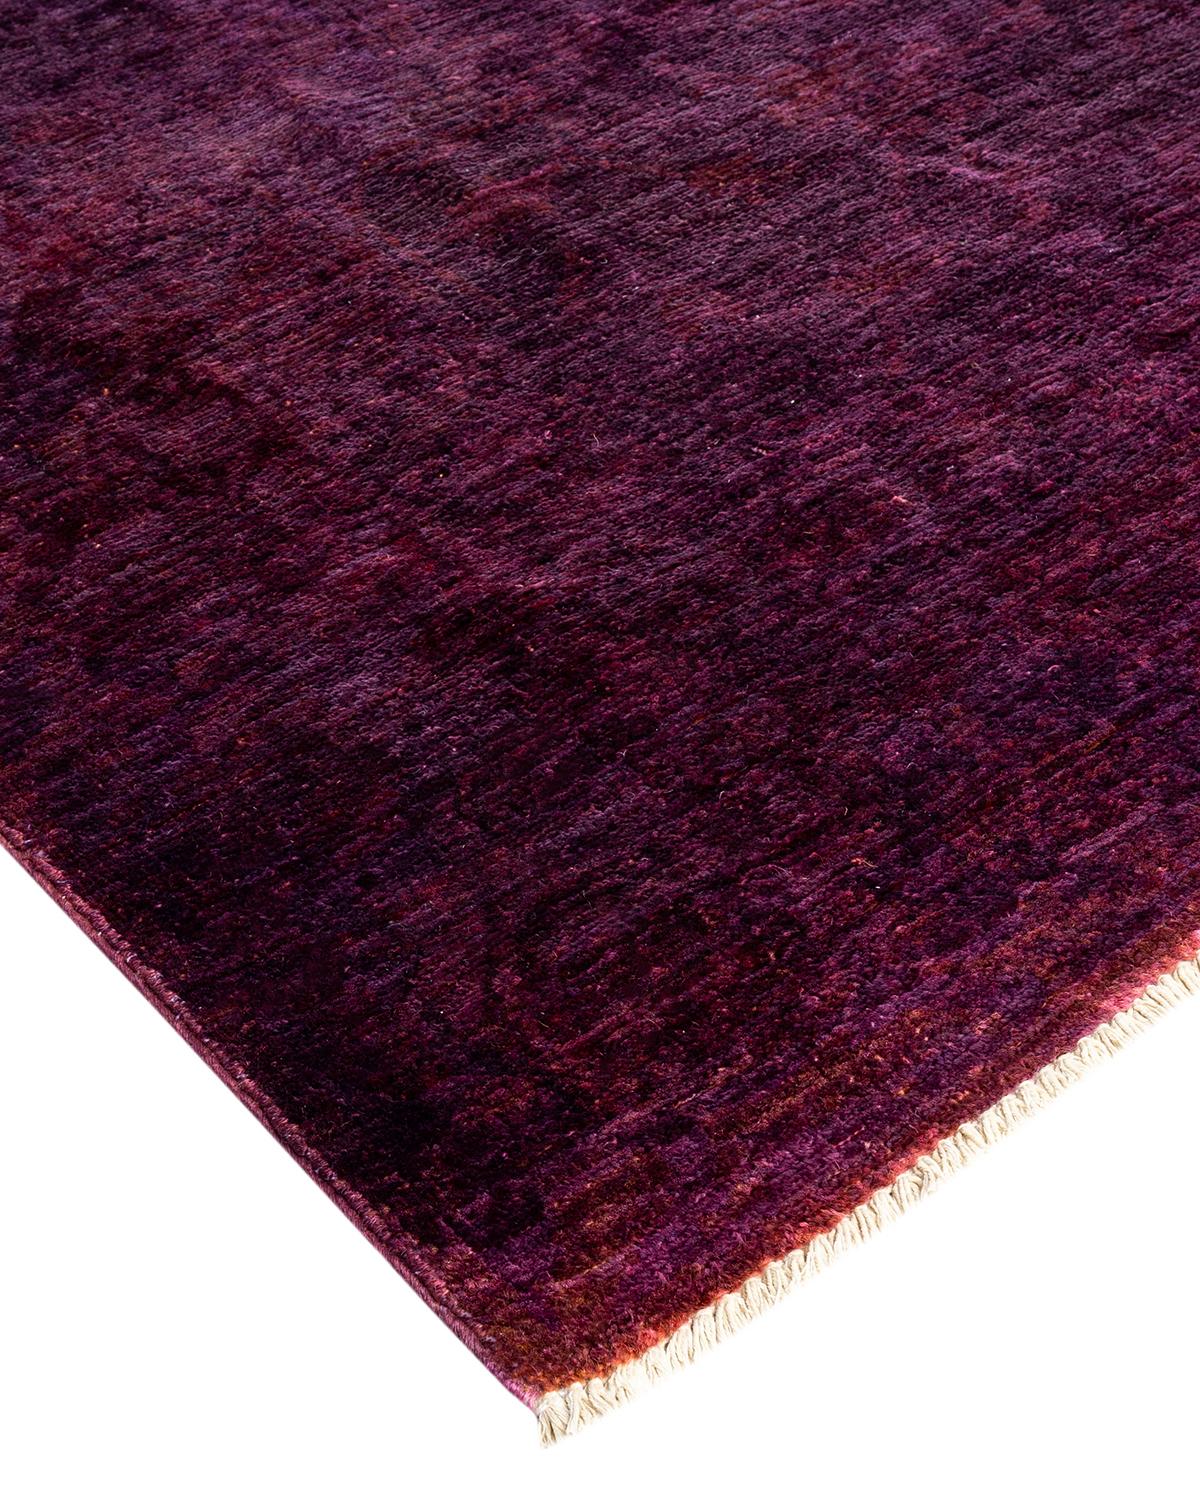 Vibrance-Teppiche sind der Inbegriff von Klassik mit Pfiff: traditionelle Muster in leuchtenden Farben gefärbt. Jeder handgeknüpfte Teppich wird mit einem 100 % natürlichen botanischen Farbstoff gewaschen, der verborgene Nuancen in den Mustern